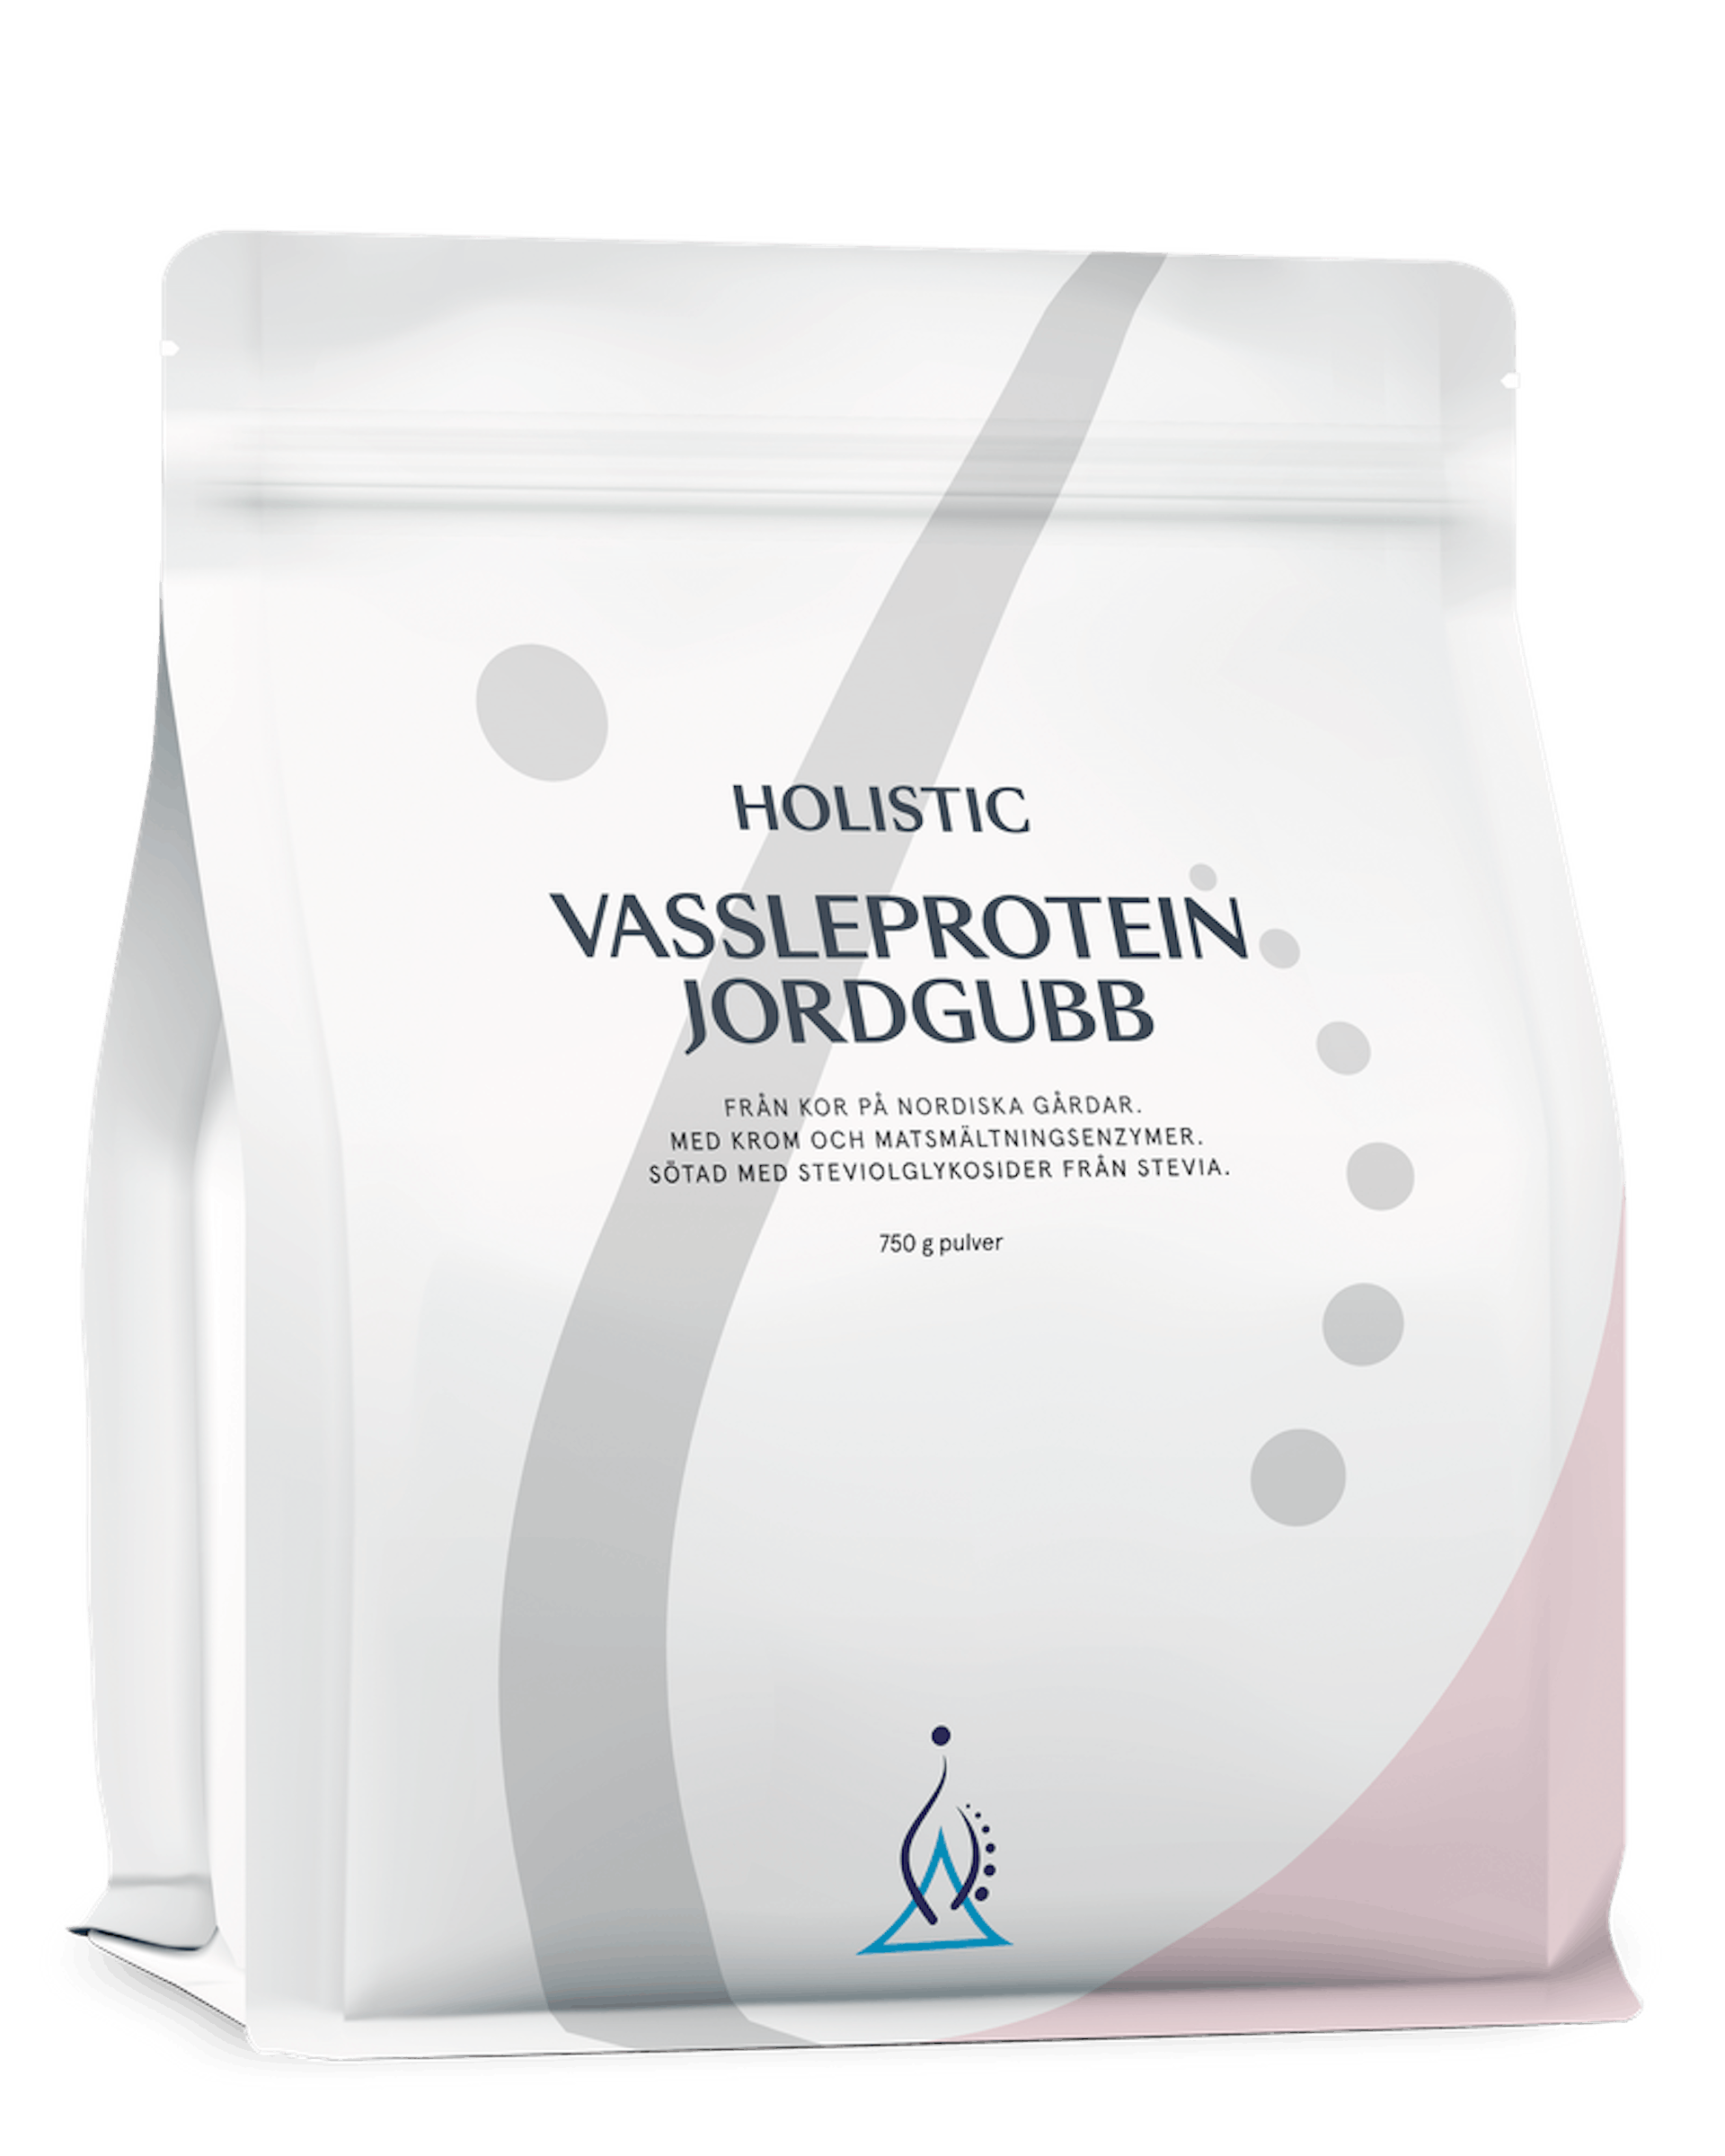 Vassleprotein jordgubb, 750 g